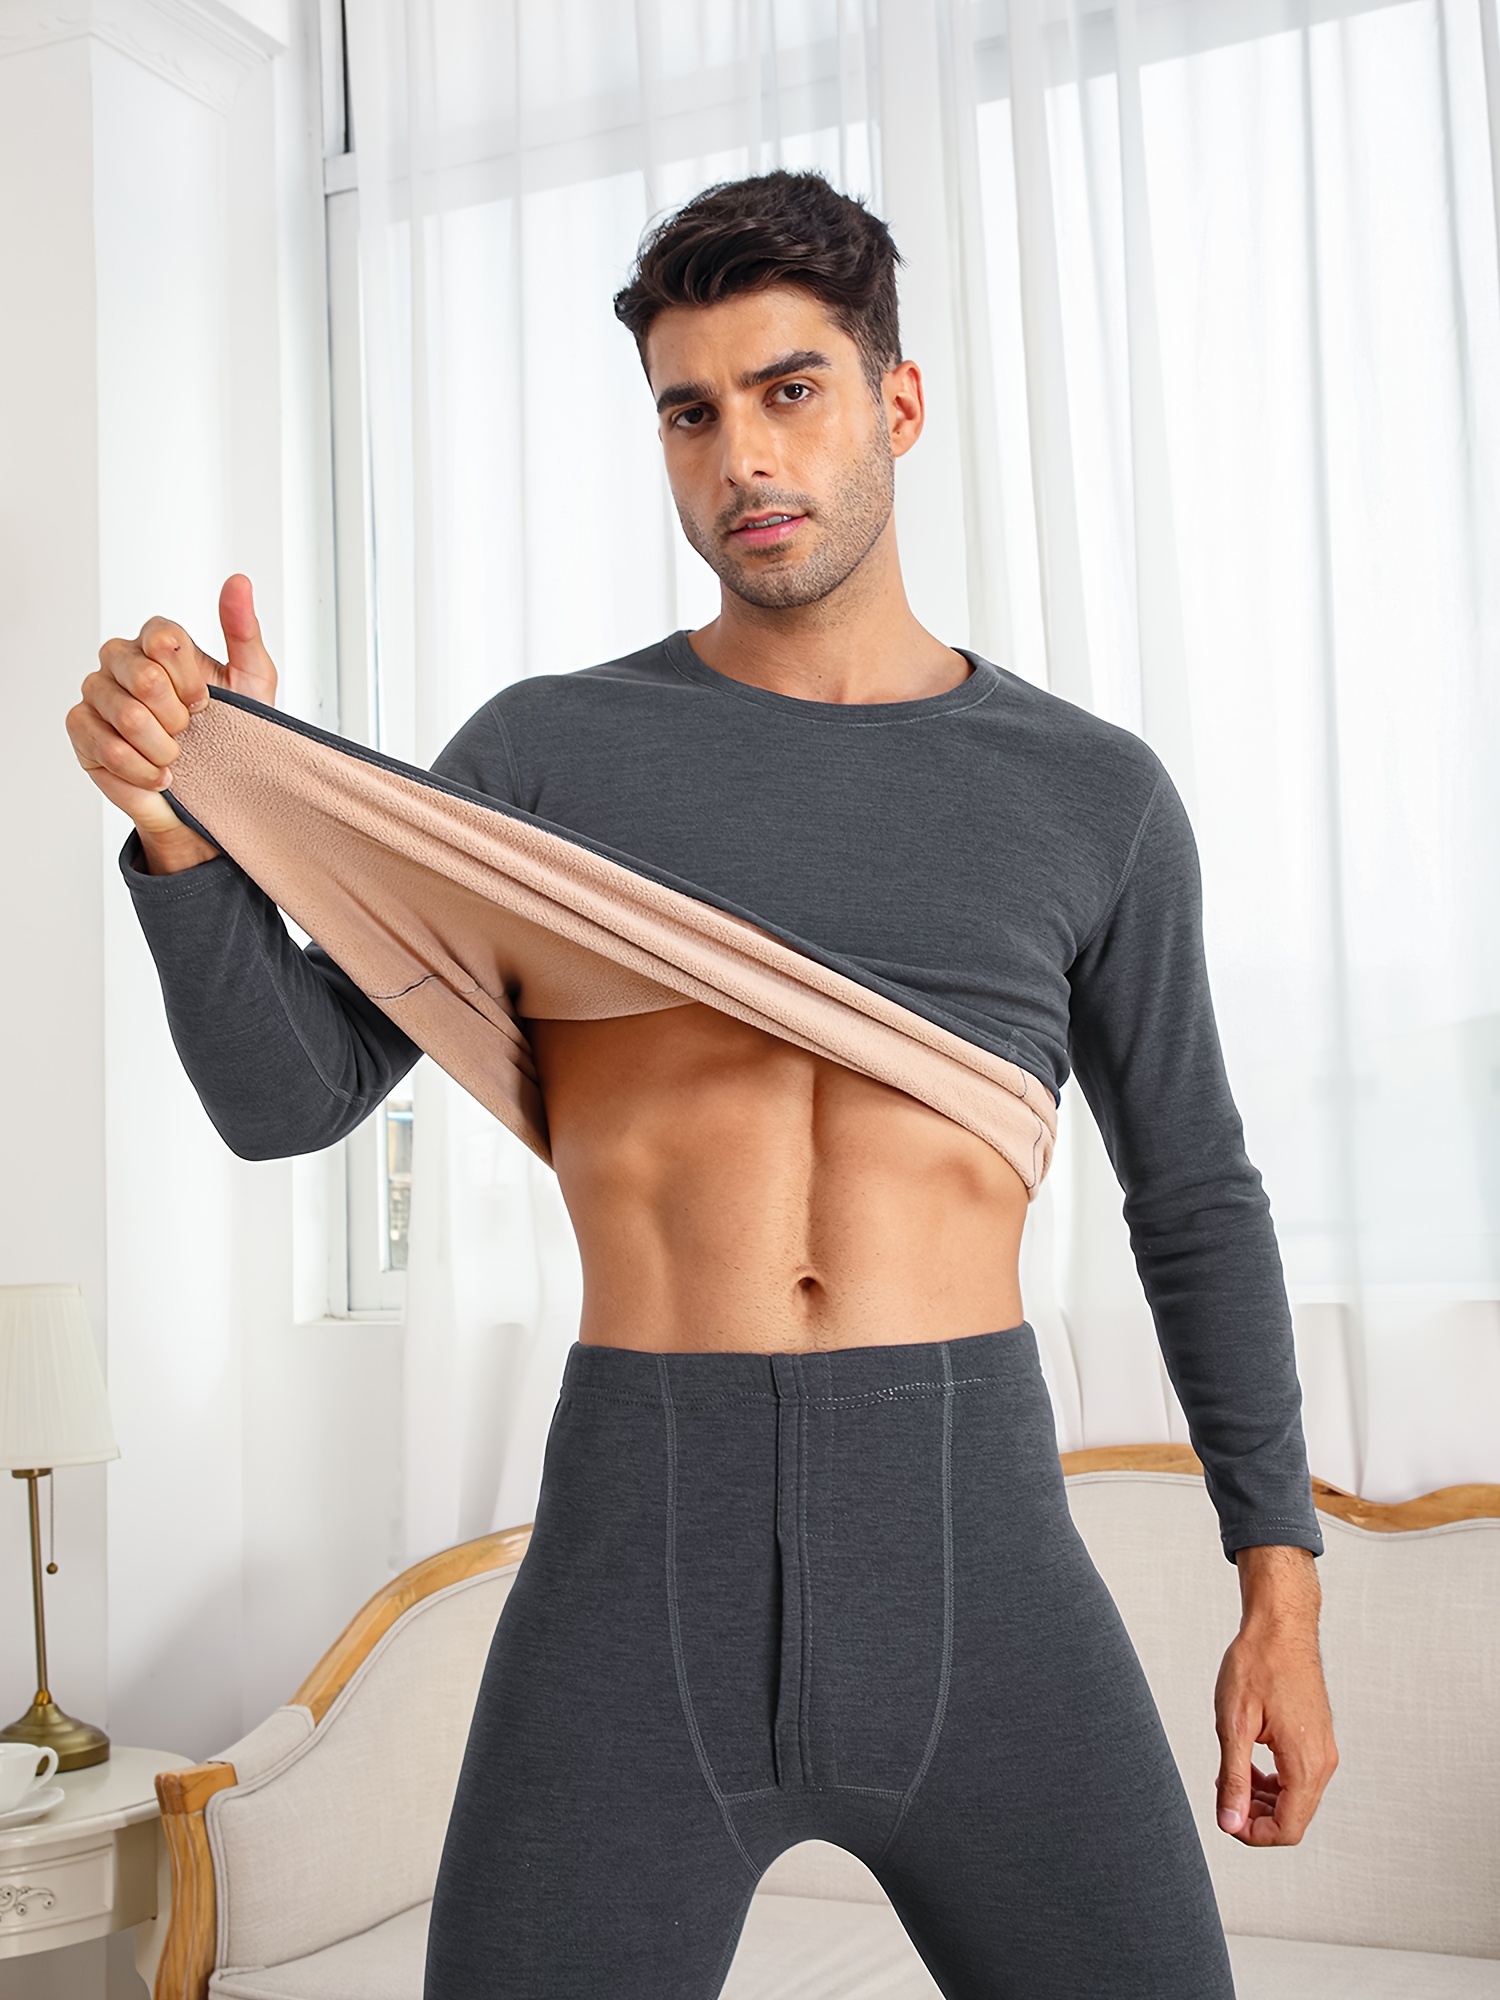 Stay Warm Stylish: Men's Velvet Underwear Set Winter Outdoor